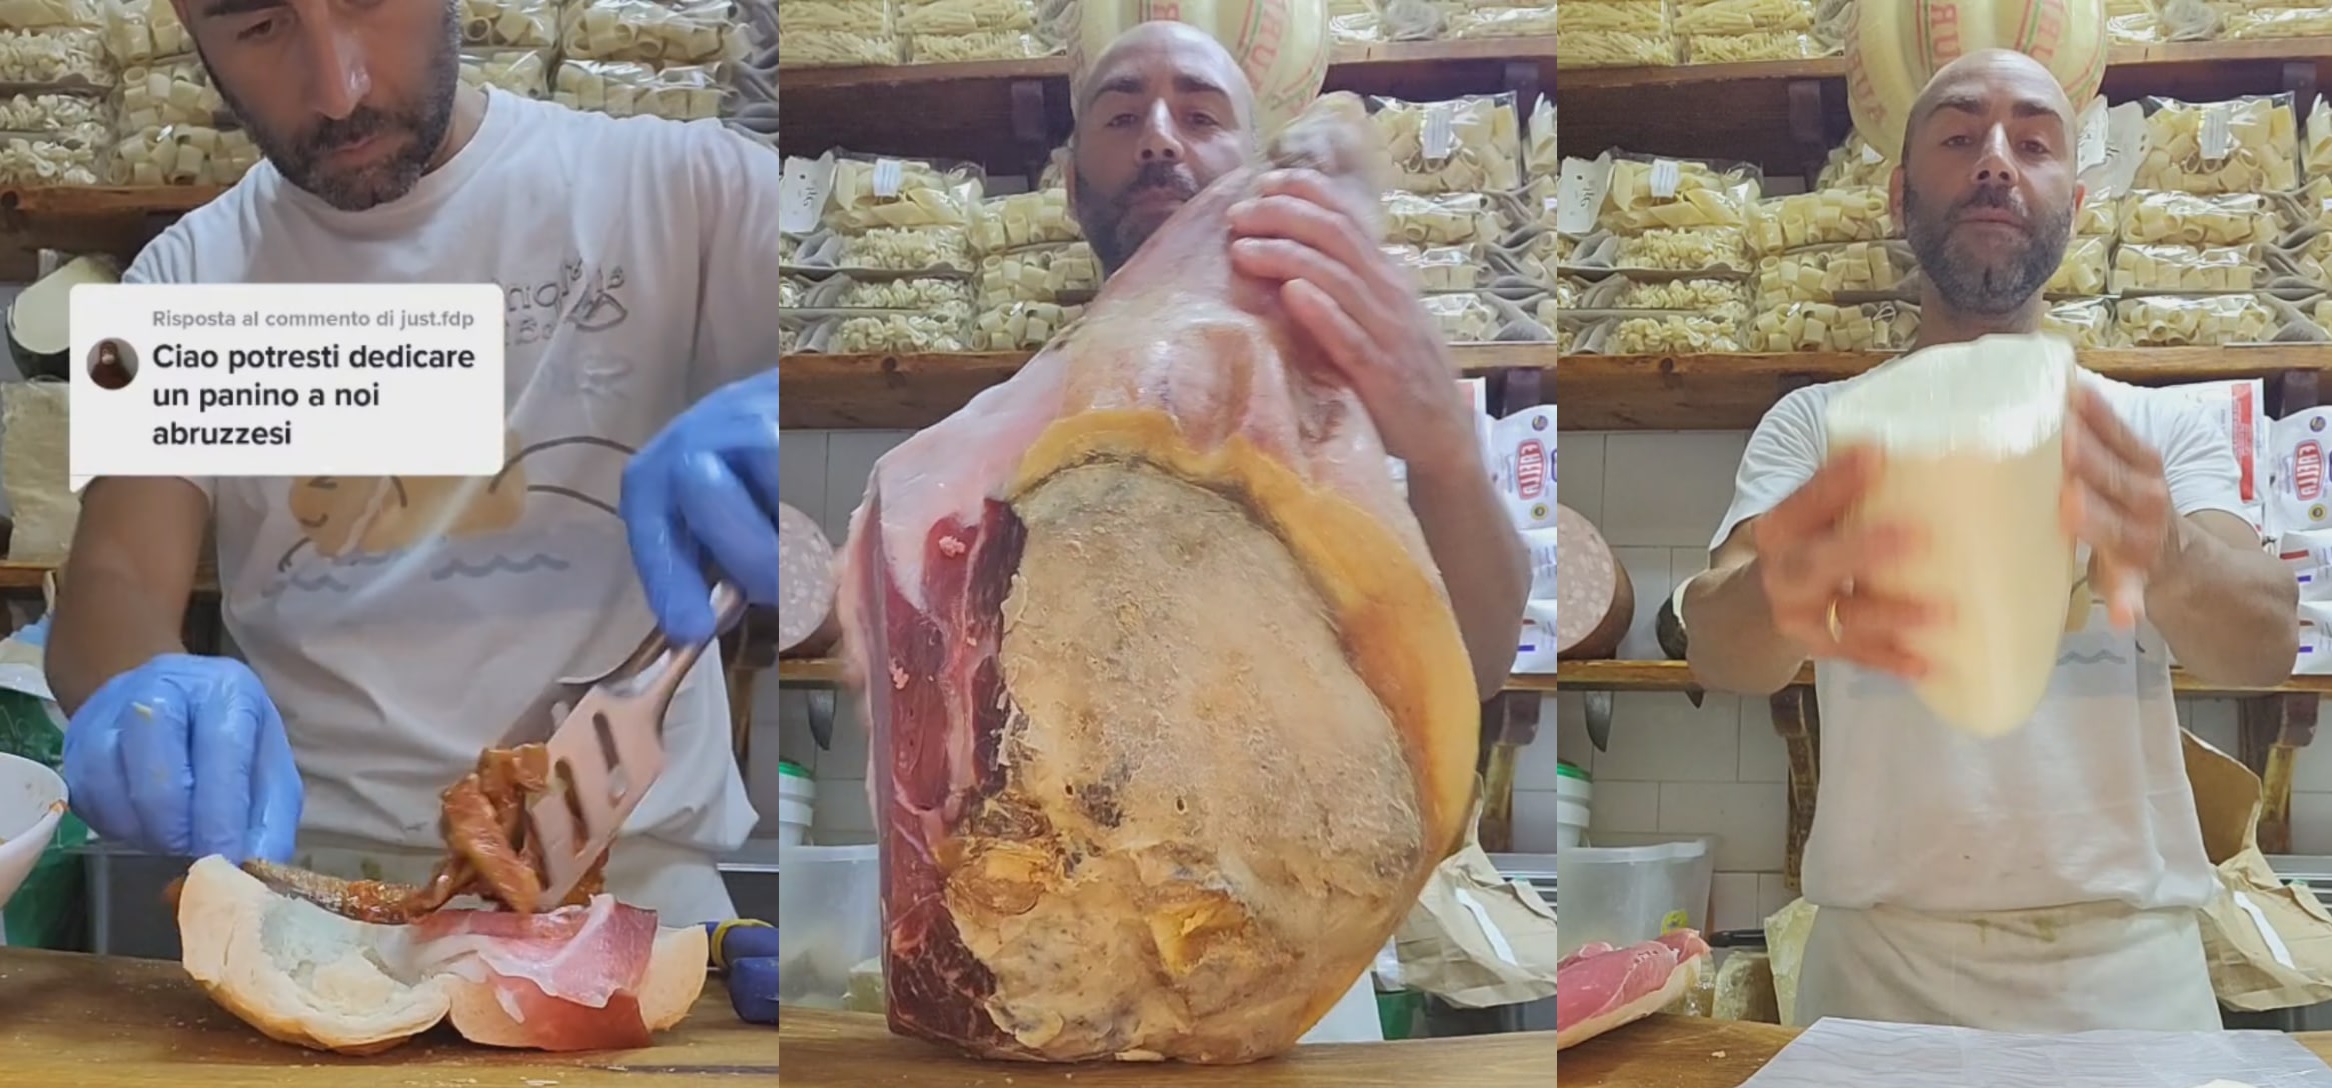 The butcher Donato De Caprio